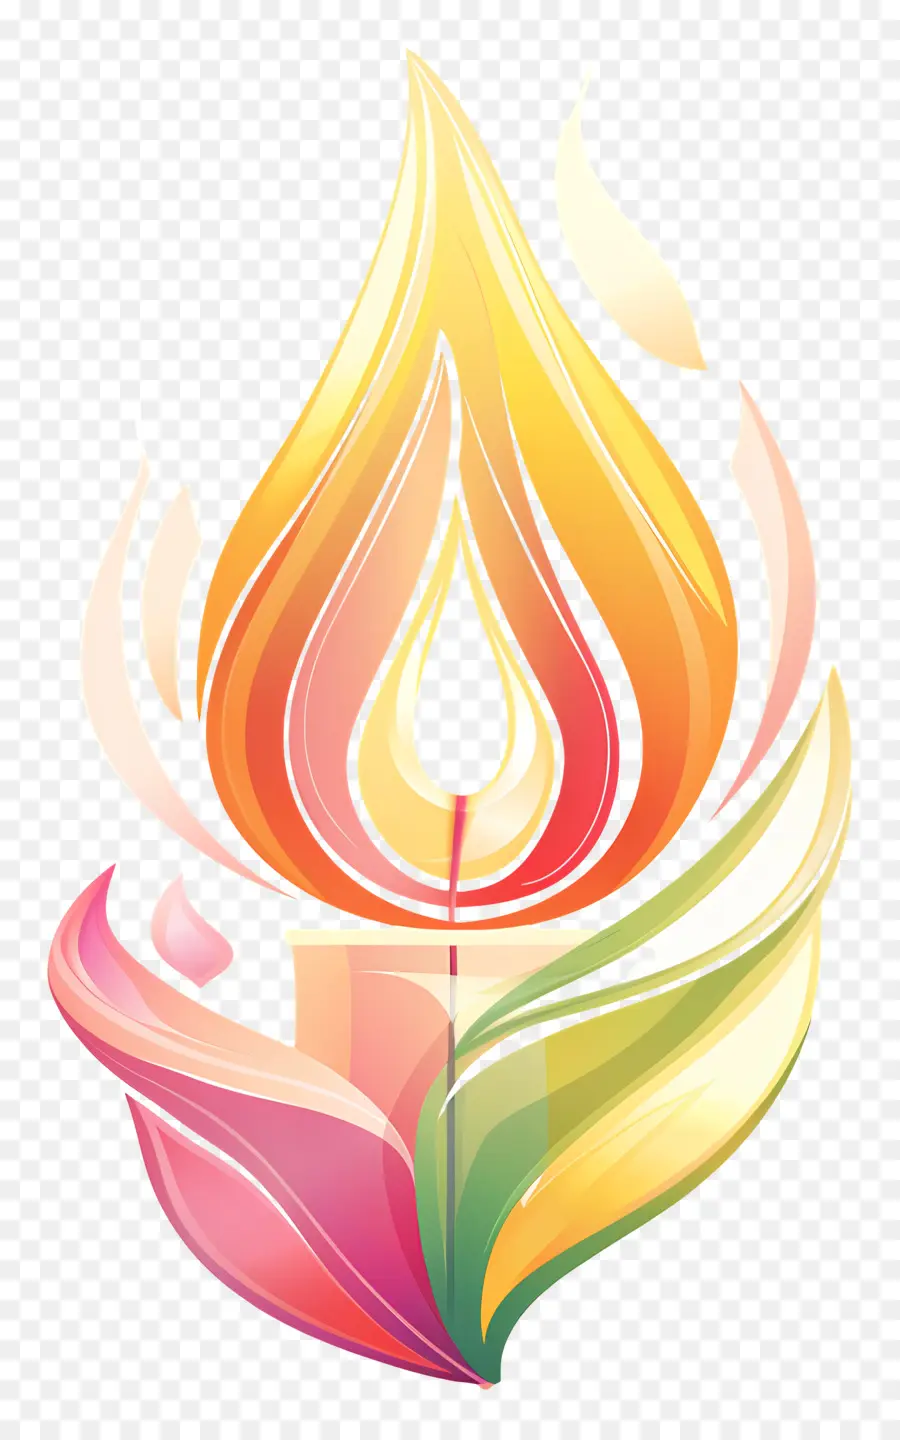 Erneuerungstag Kerzenflamme glühende Farben - Leuchte Kerze mit tanzenden Flammen, farbenfrohes Design